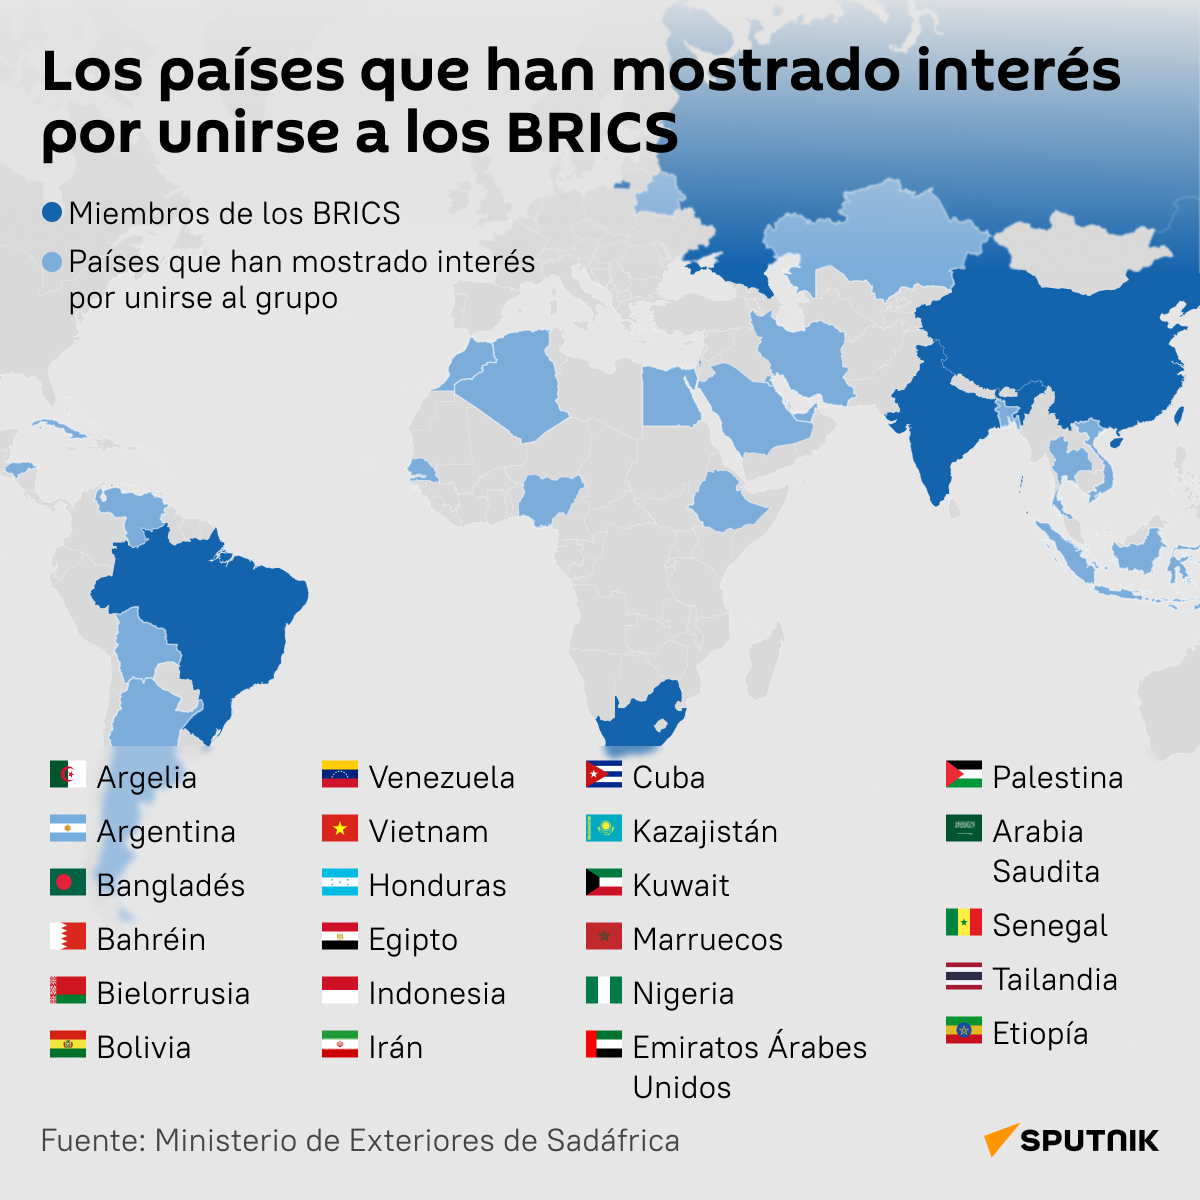 Estos son los países que tienen interés por unirse a los BRICS  - Sputnik Mundo